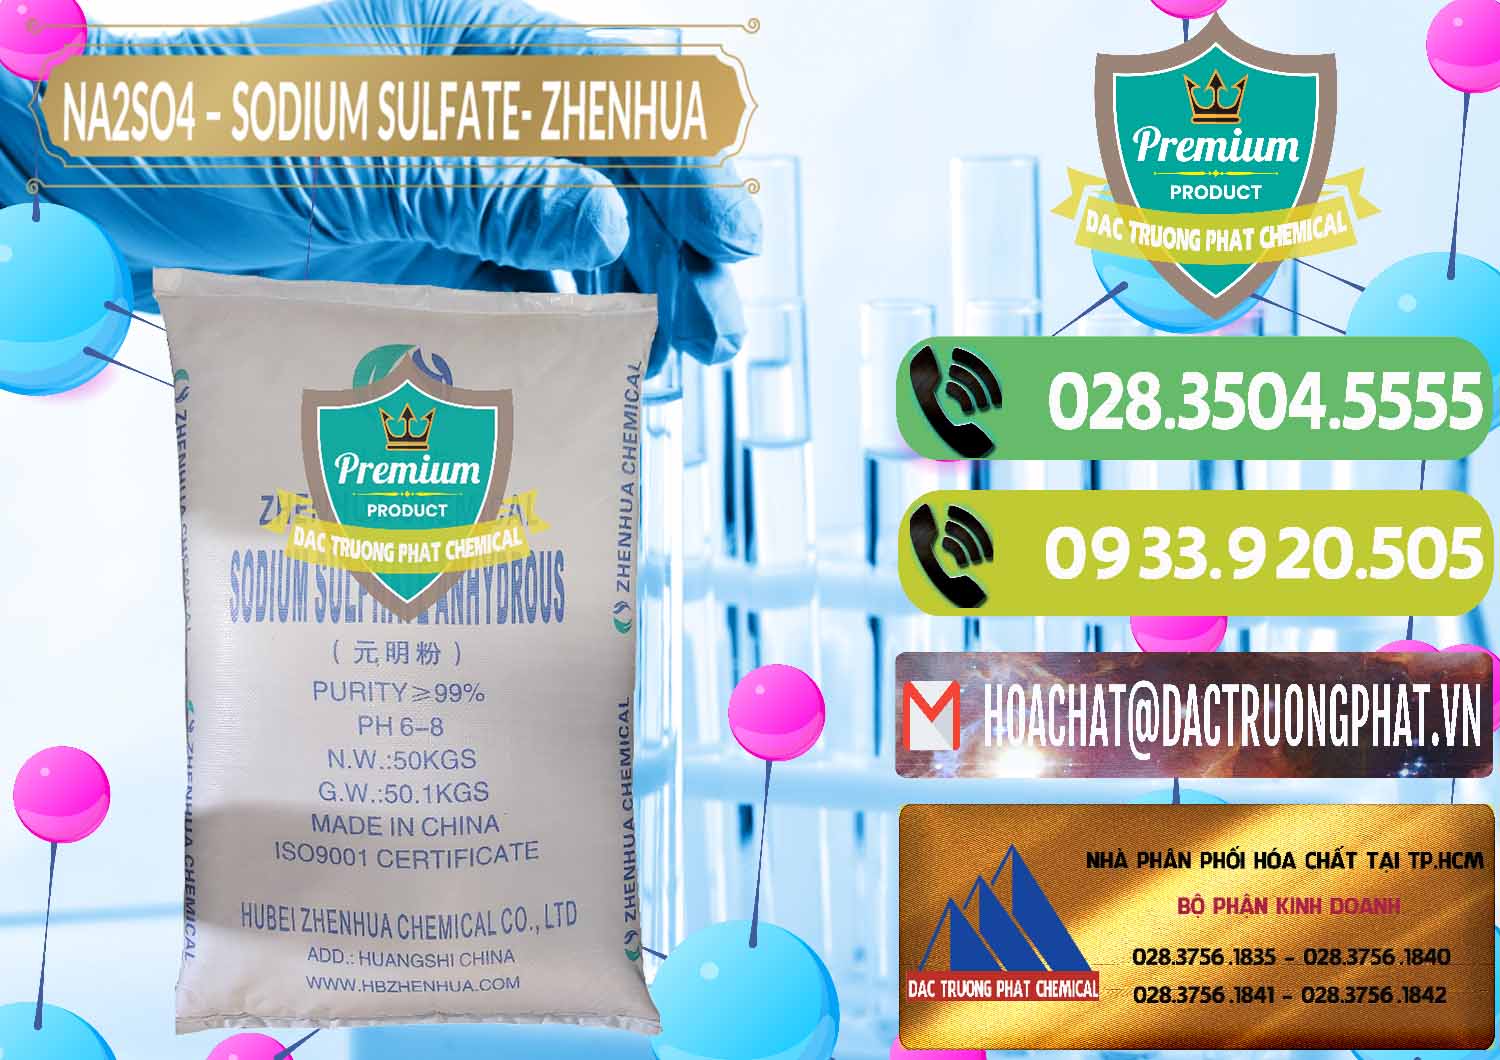 Nơi chuyên bán và phân phối Sodium Sulphate - Muối Sunfat Na2SO4 Zhenhua Trung Quốc China - 0101 - Nơi phân phối ( nhập khẩu ) hóa chất tại TP.HCM - hoachatmientay.vn